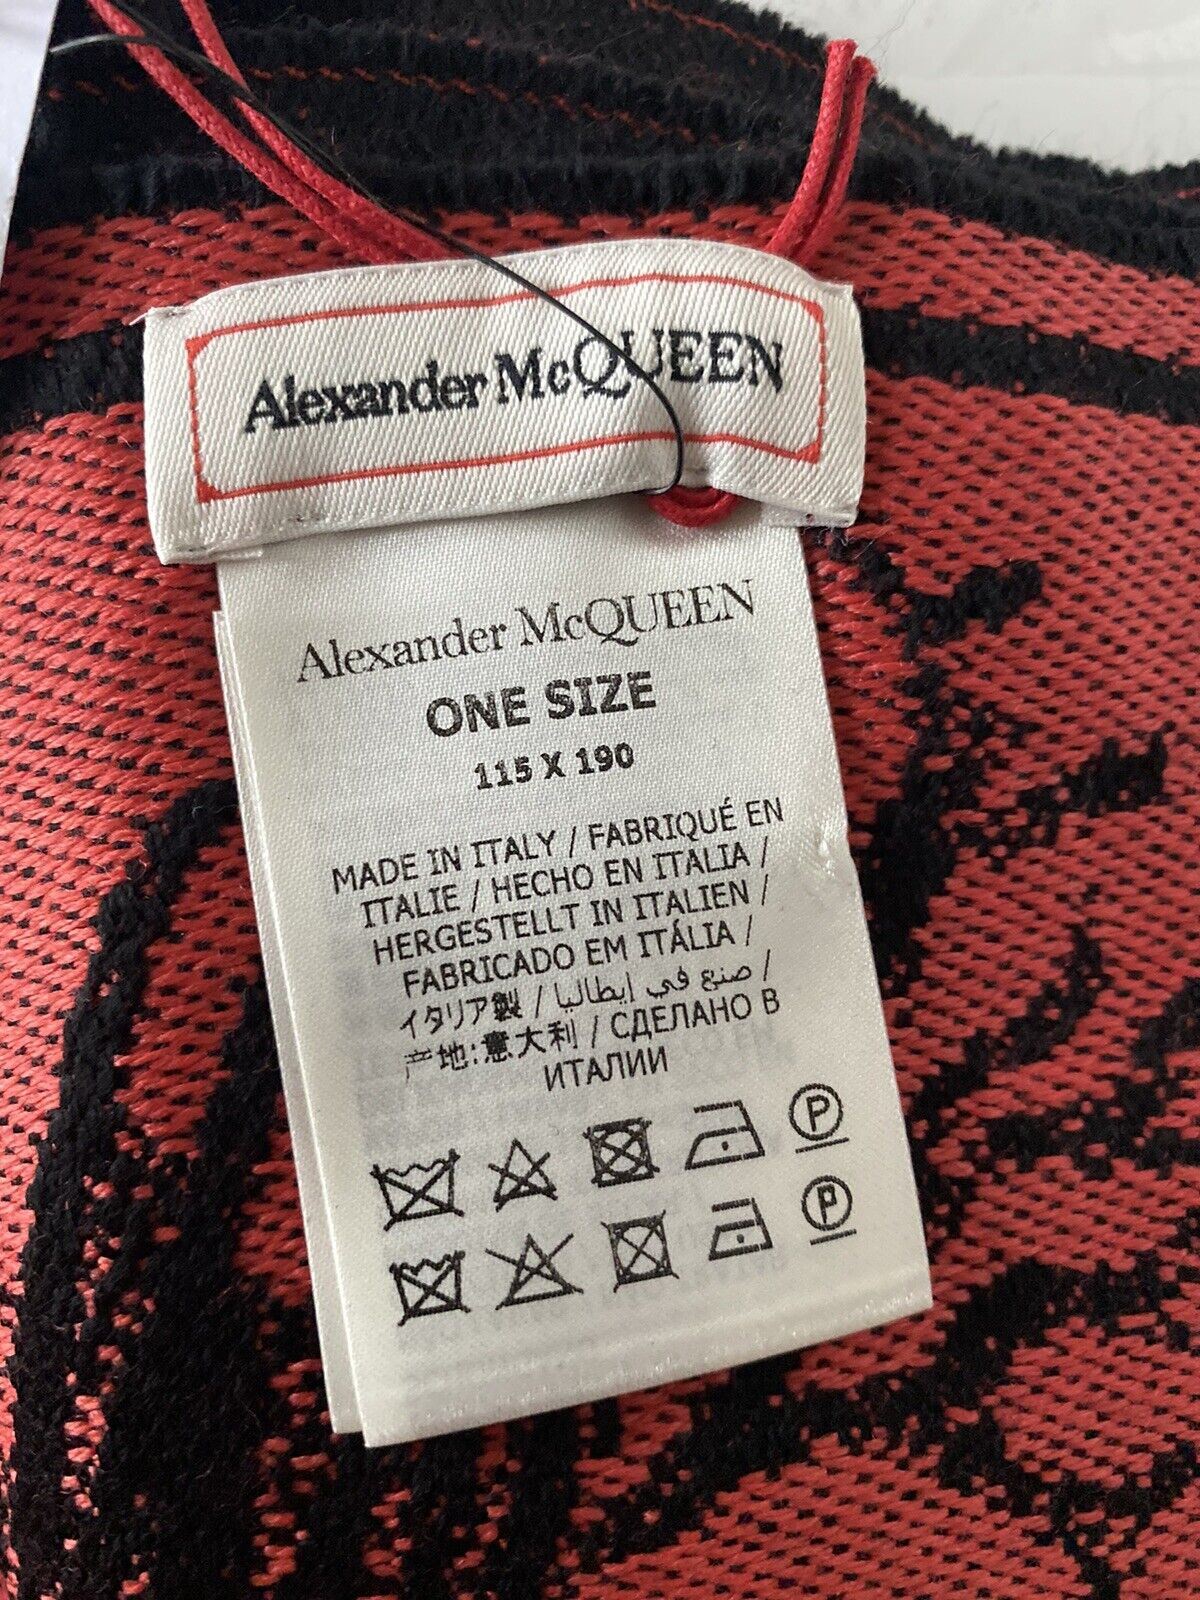 Neu mit Etikett: Wollschal mit Alexander McQueen-Logo und Unterwasserdruck, 115 x 190, hergestellt in Italien